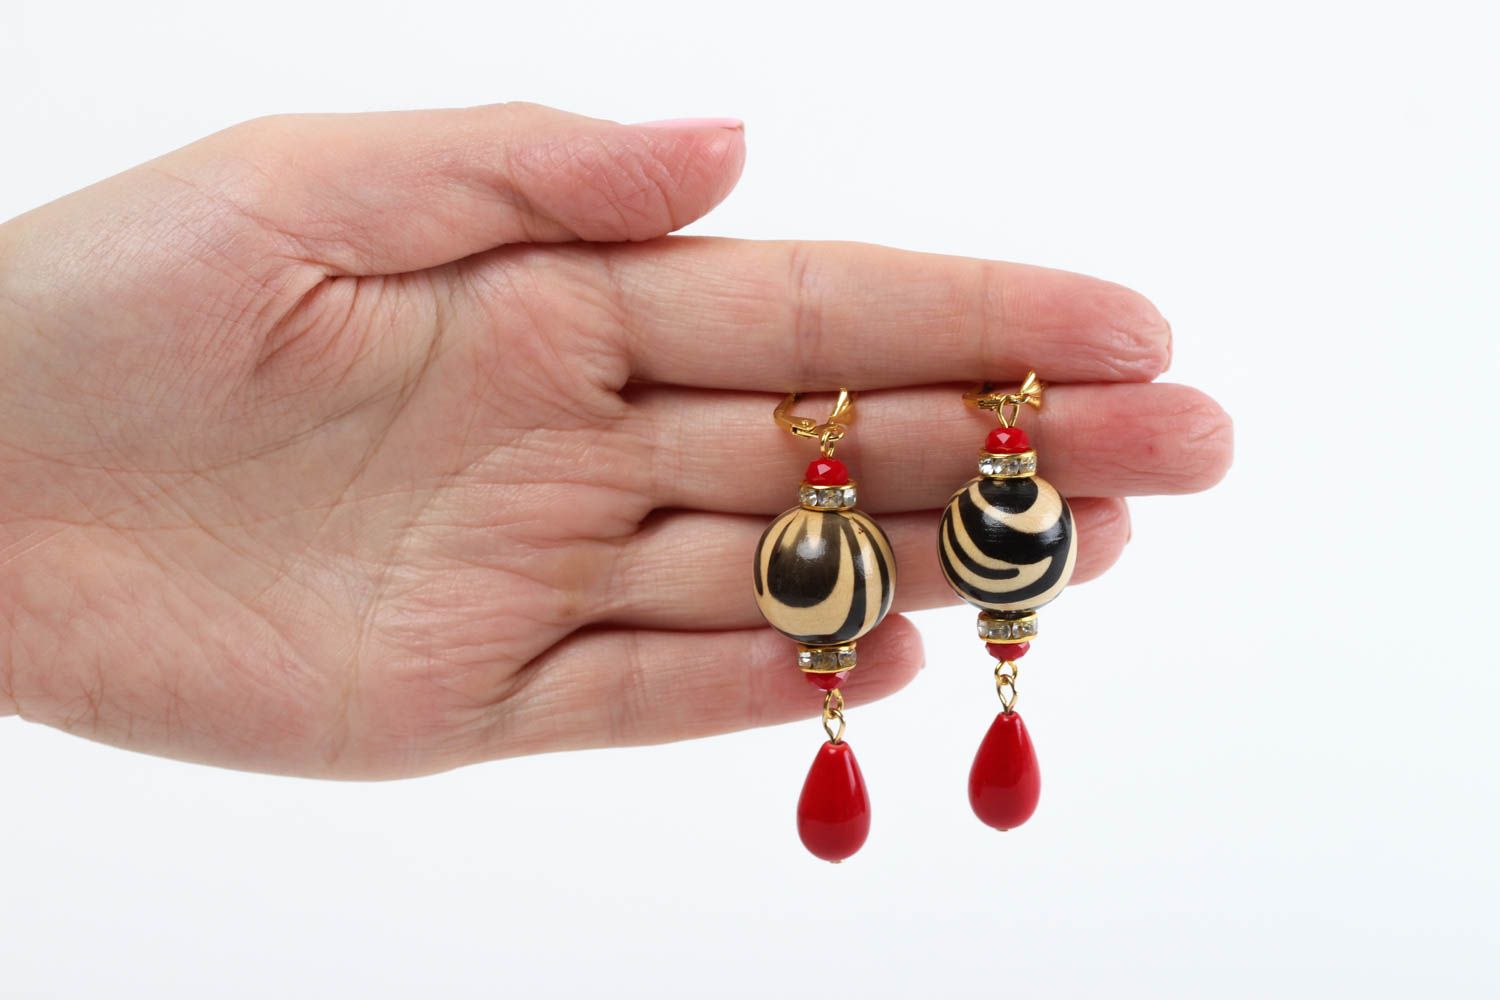 Handmade earrings designer earrings for girls earrings with charms gift for her photo 5